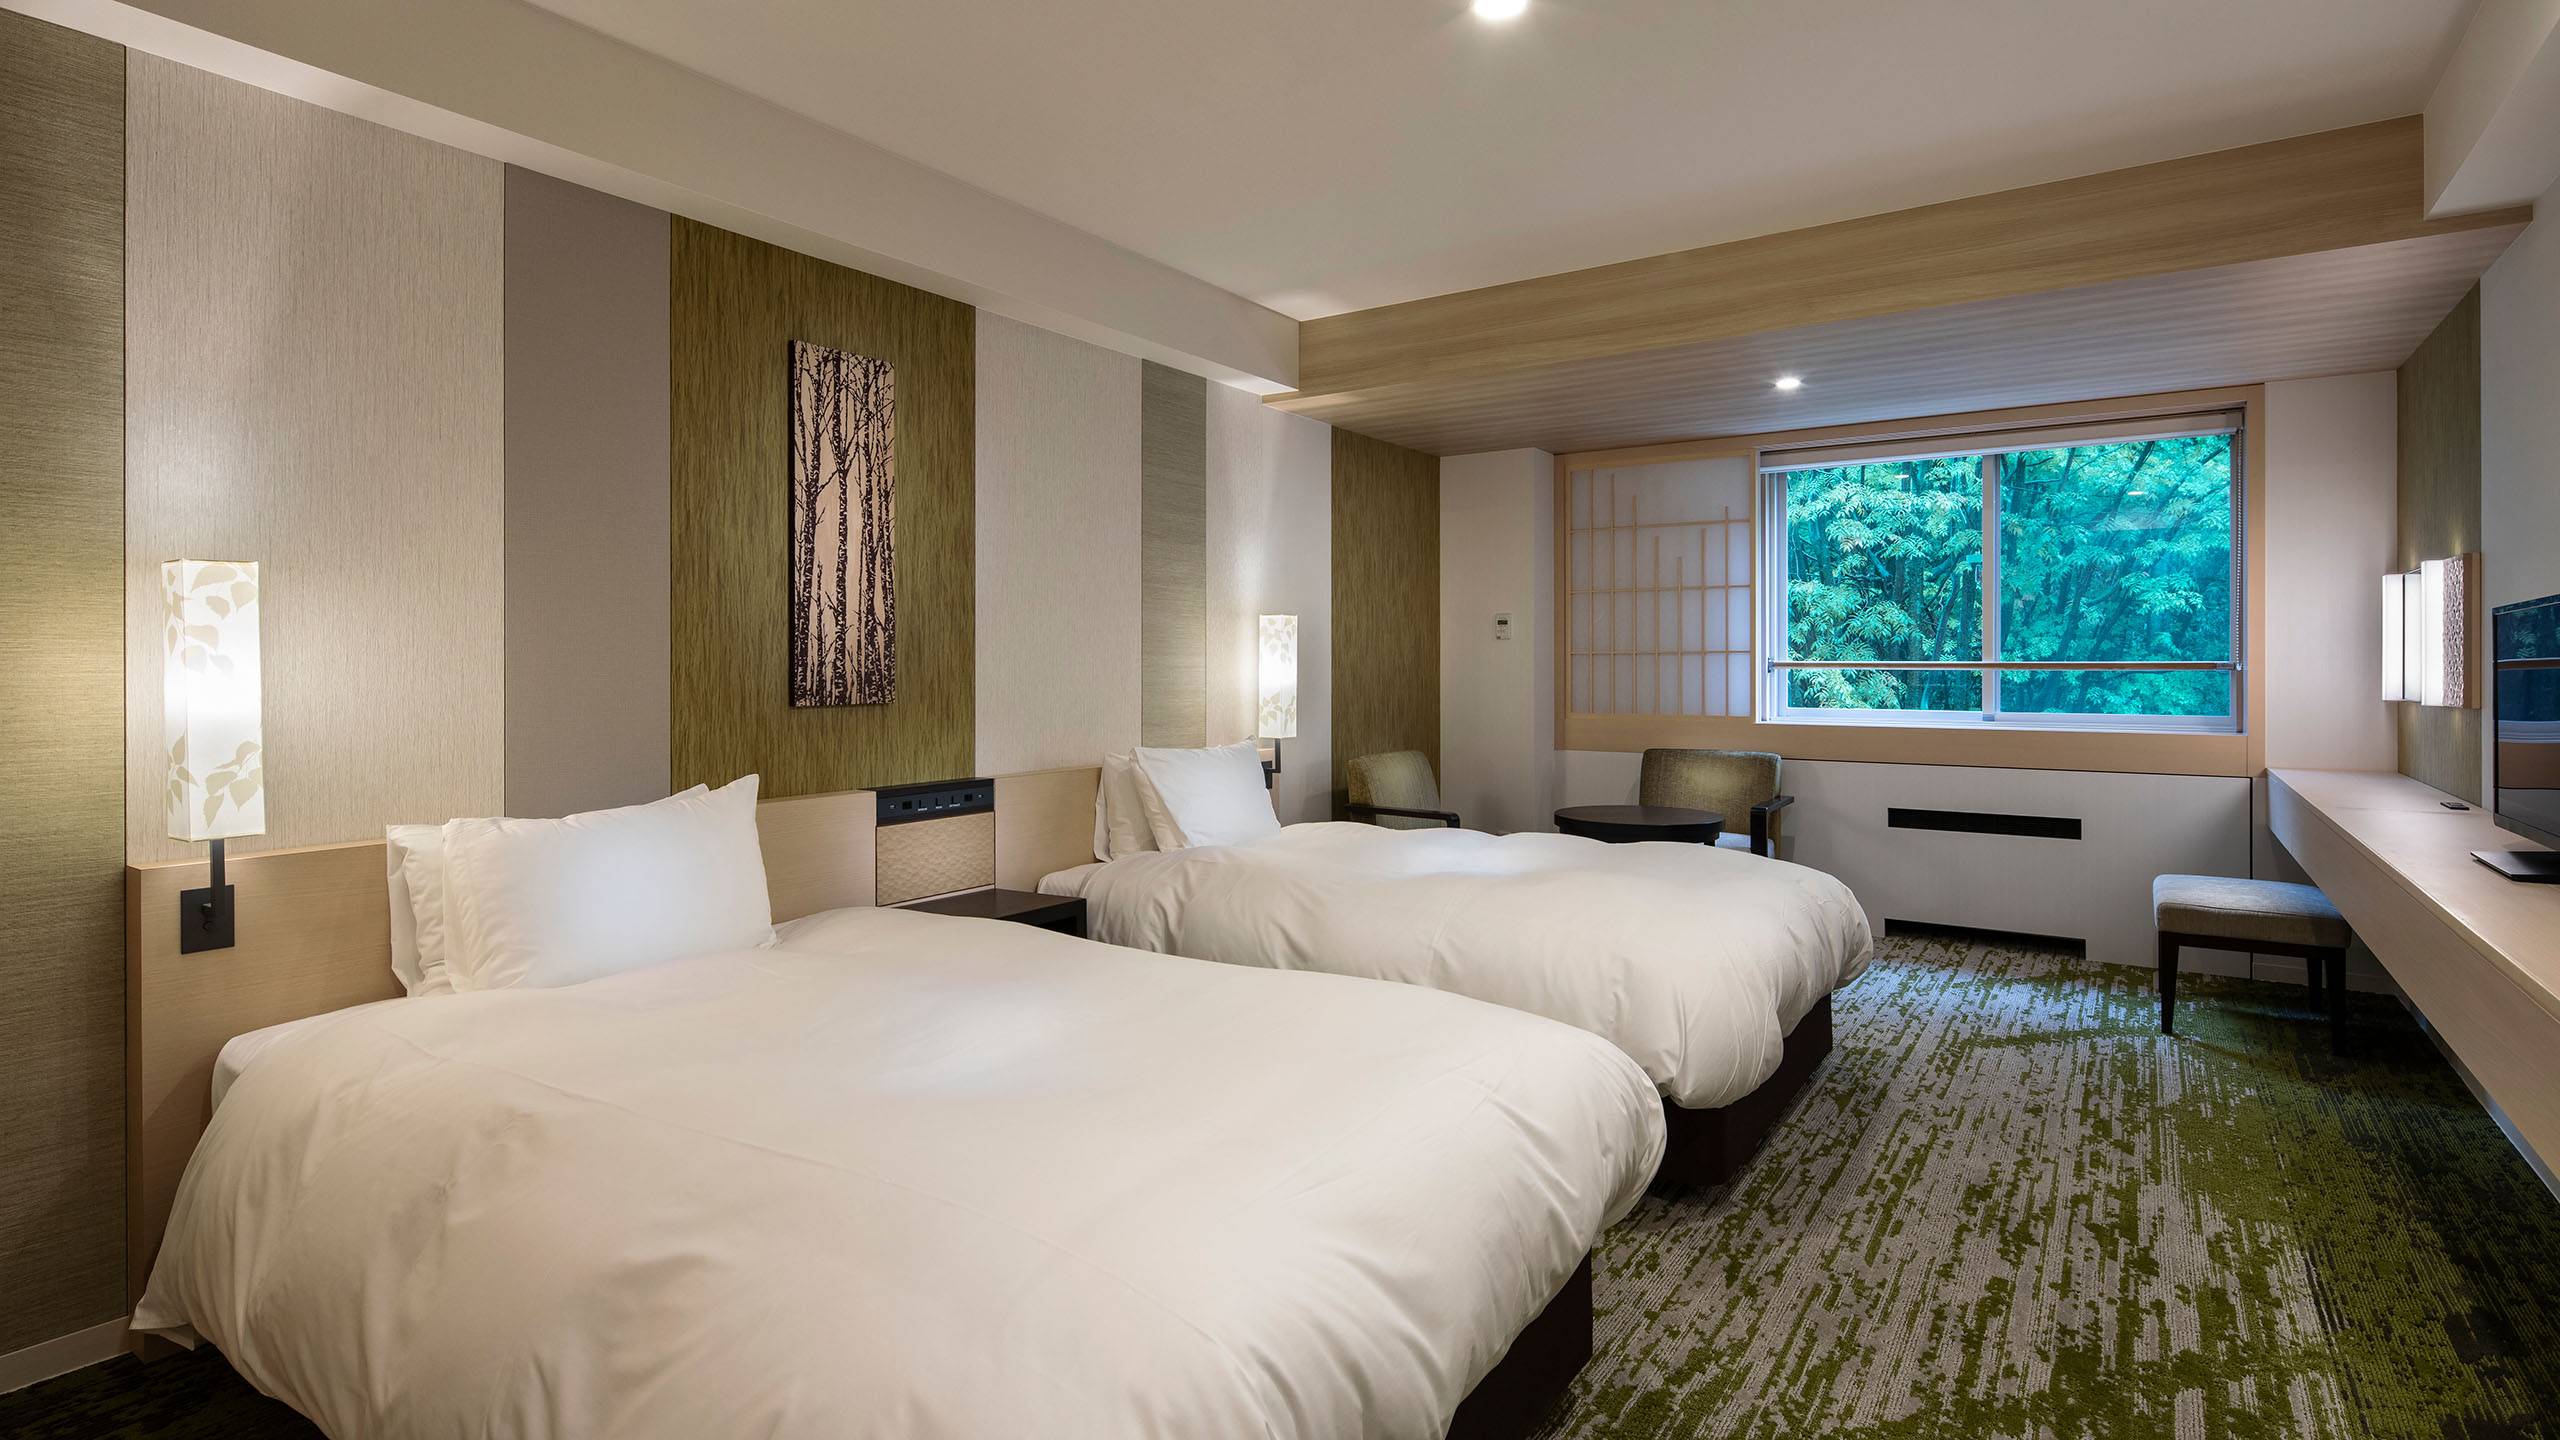 登別溫泉酒店 部份房間可以見到溫泉街或森林景觀